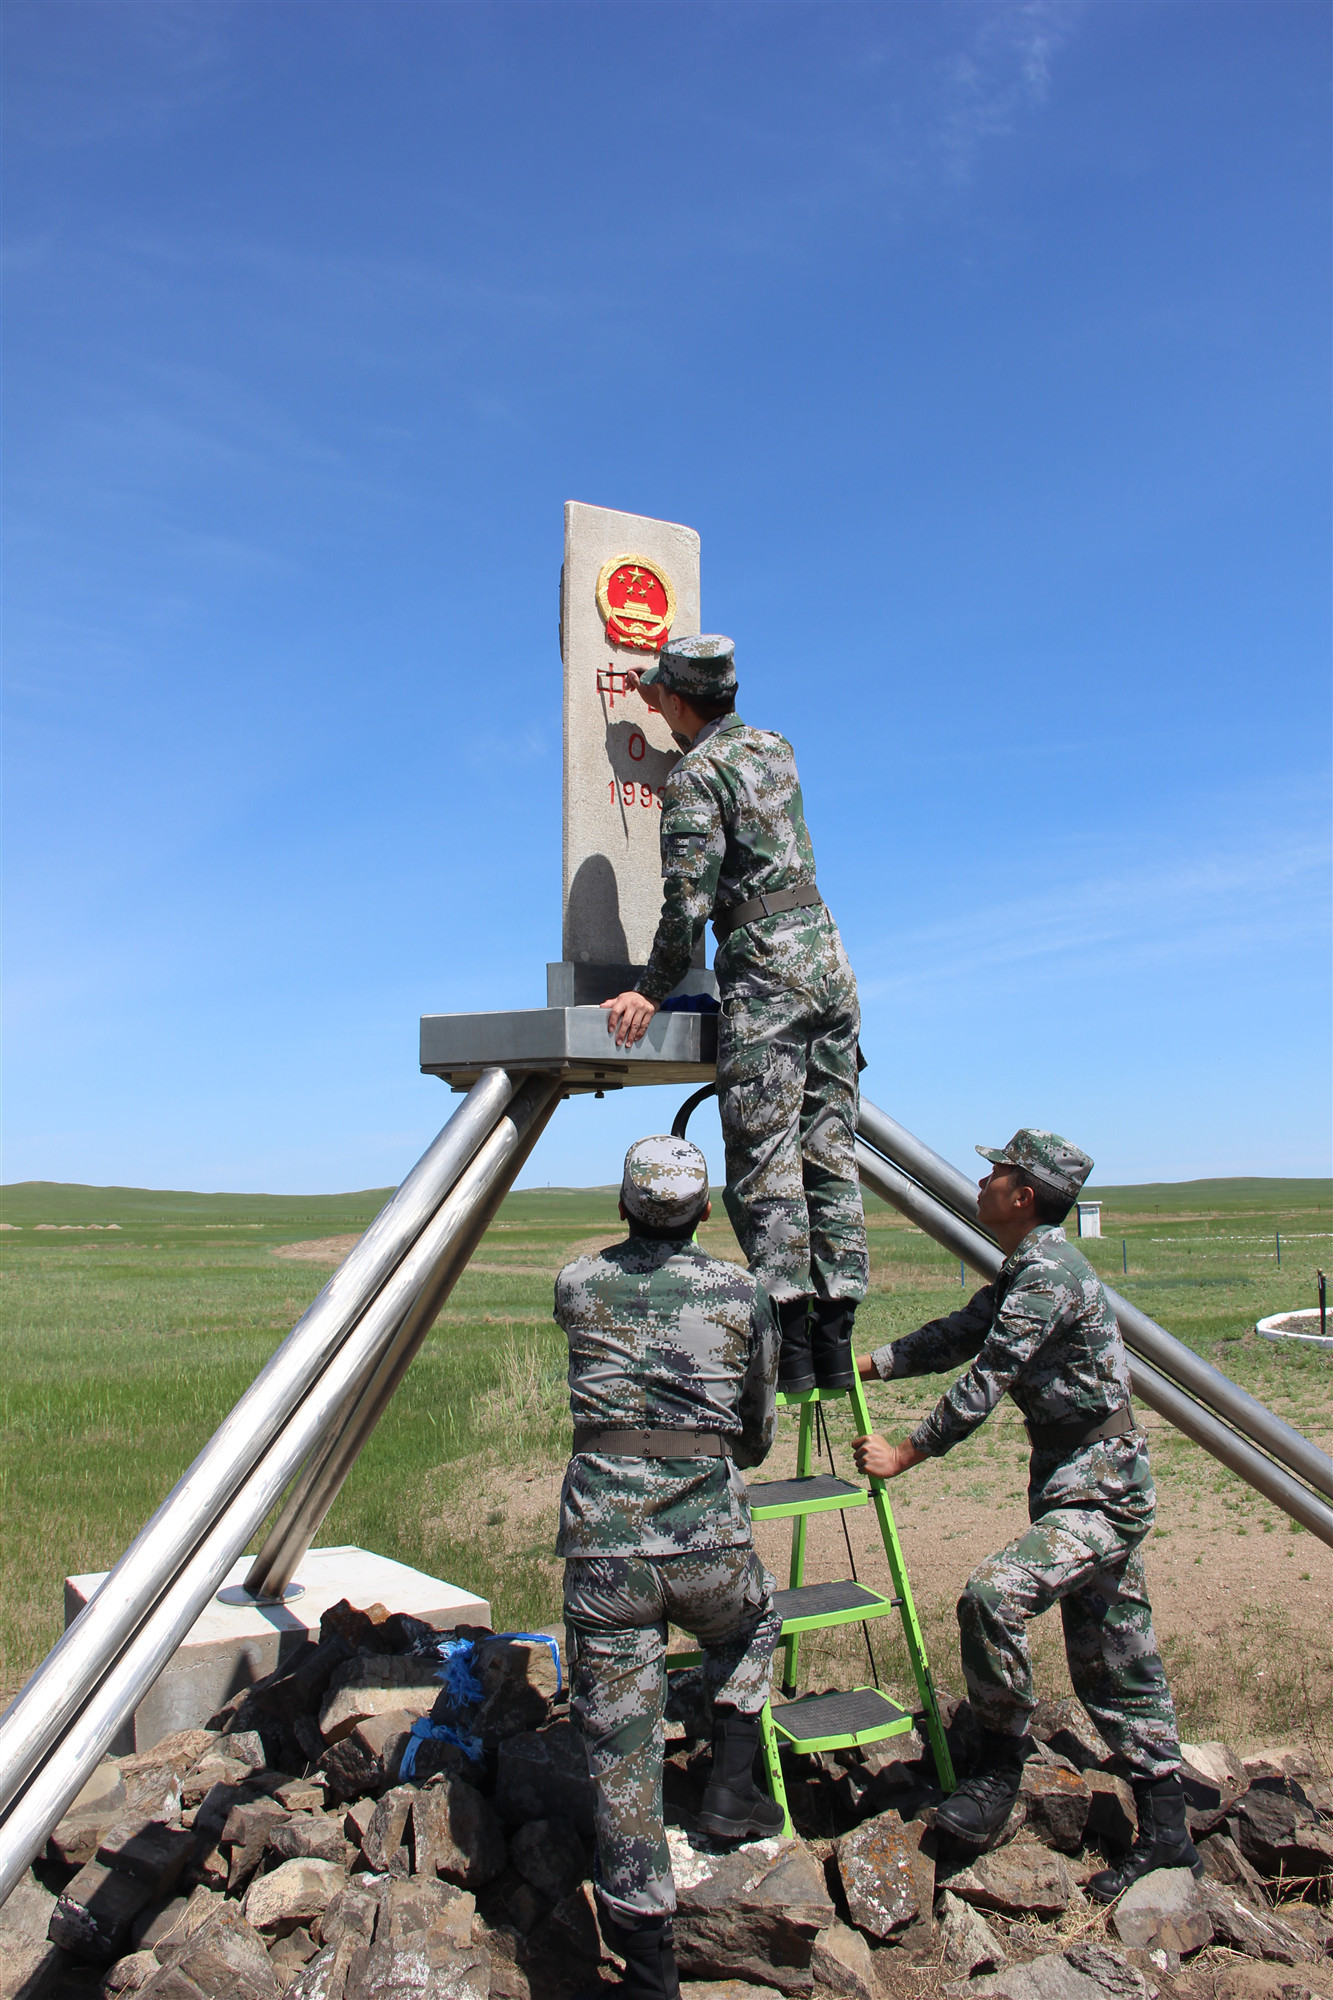 界碑描红主题活动第三采访分队15日到达北部战区内蒙古边防某旅一连